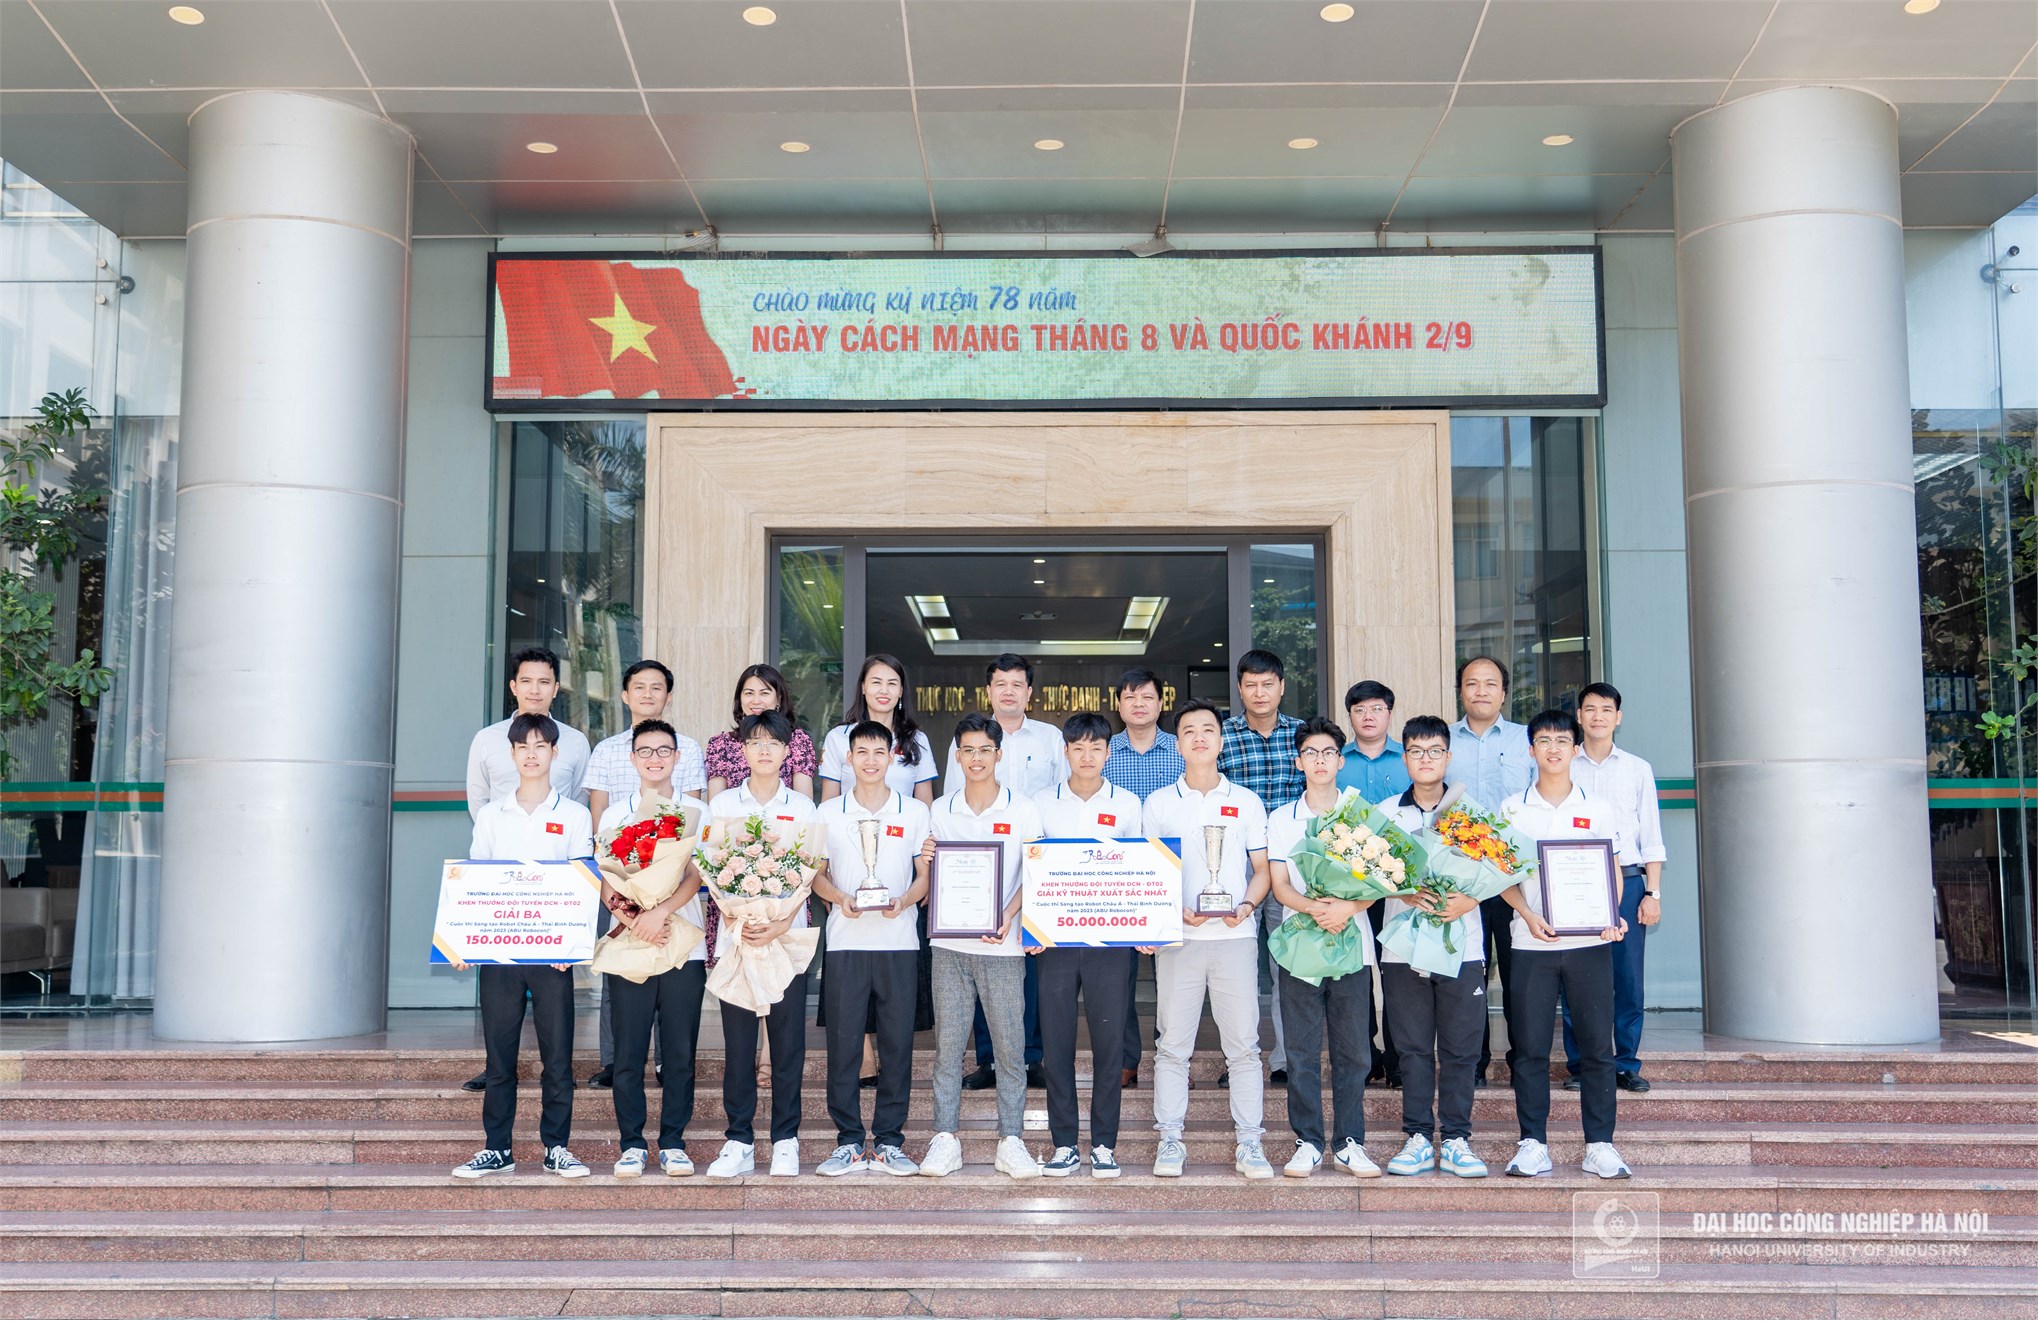 Đại học Công nghiệp Hà Nội khen thưởng 200 triệu đồng đội tuyển Robocon DCN-ĐT02 